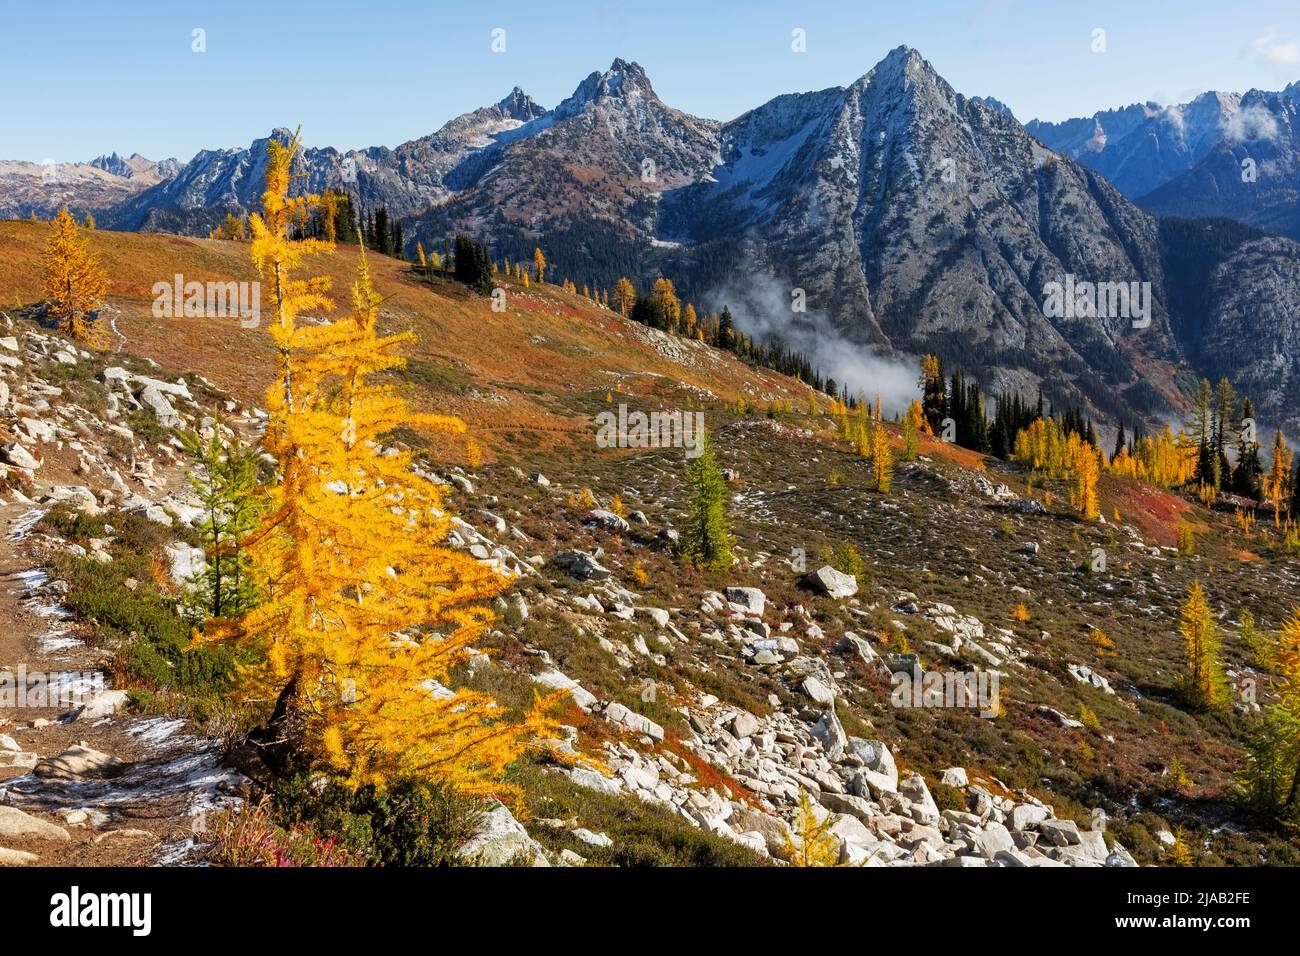 WA21607-00...WASHINGTON - Herbst auf den hohen Wiesen der North Cascades; Teil des Okanogan-Wenatchee National Forest. Stockfoto